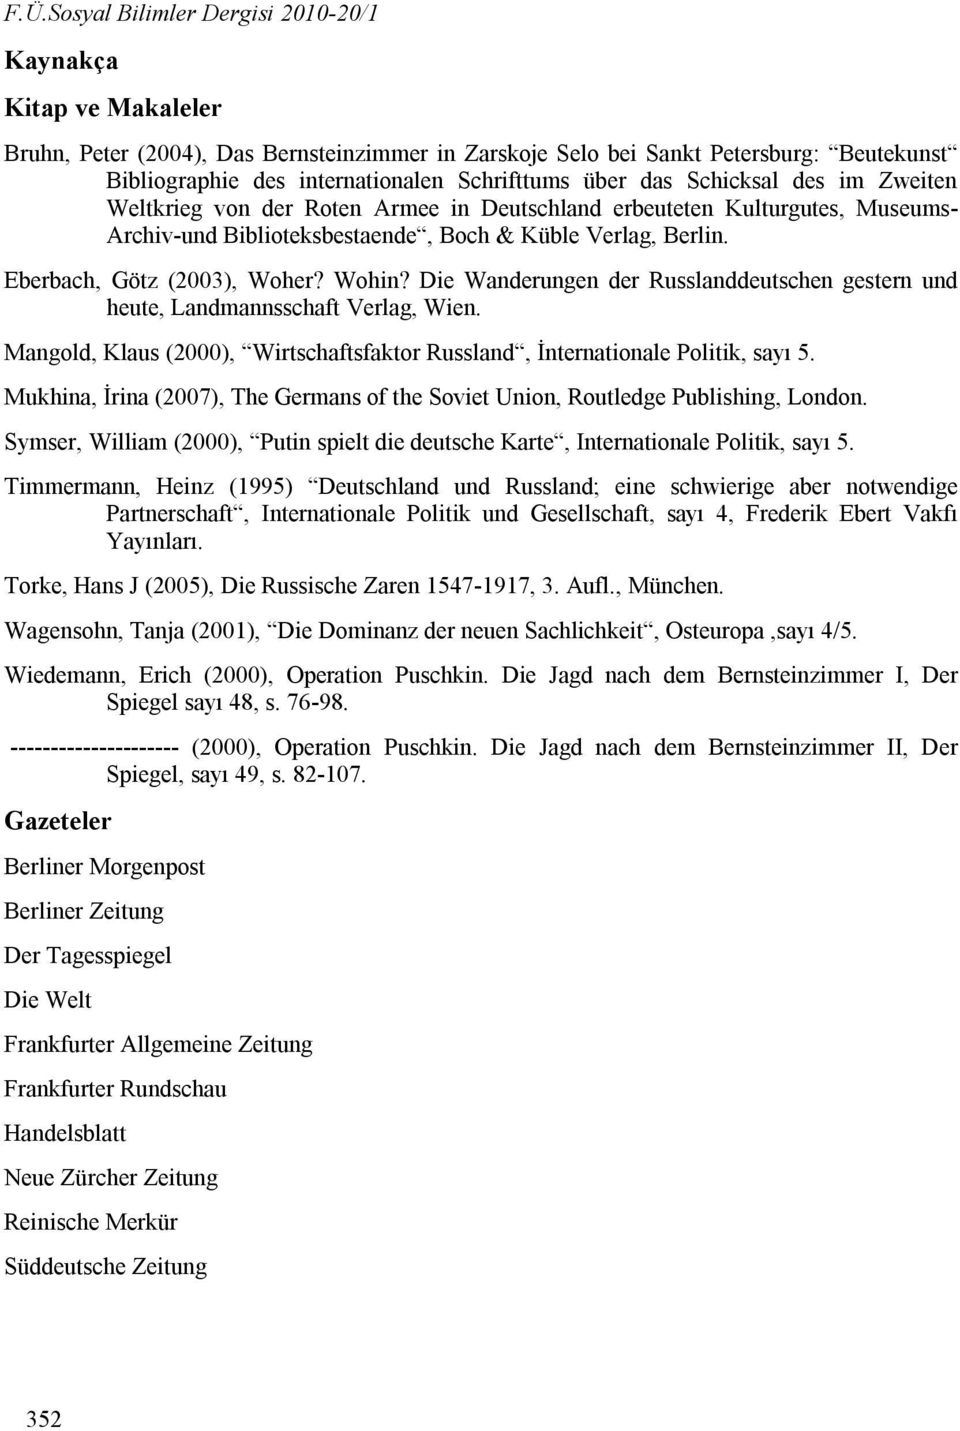 Eberbach, Götz (2003), Woher? Wohin? Die Wanderungen der Russlanddeutschen gestern und heute, Landmannsschaft Verlag, Wien.